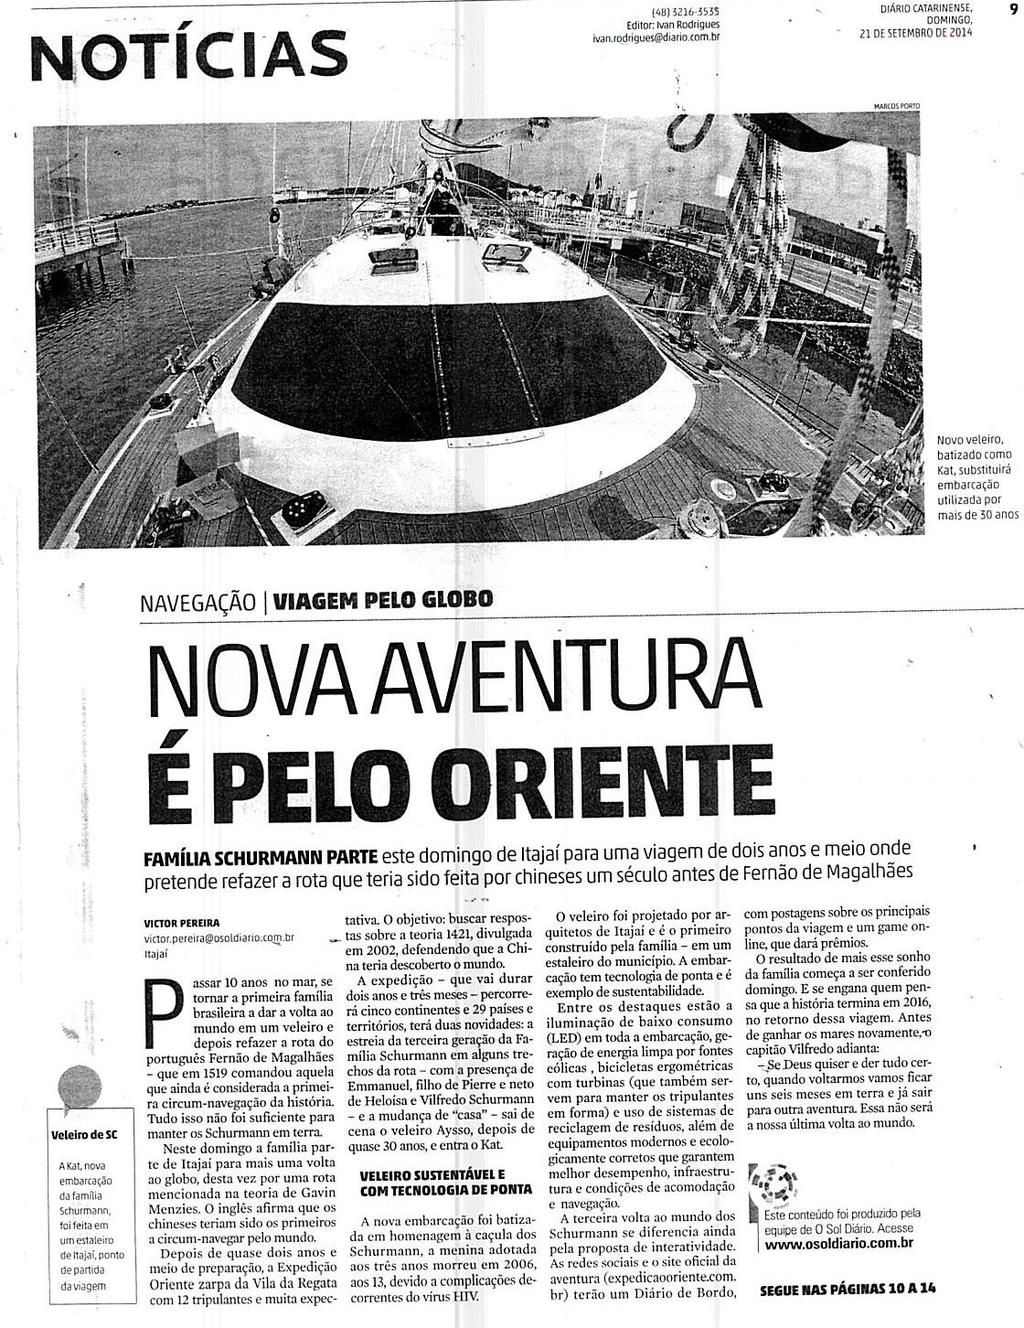 Diário Catarinense Notícias Nova aventura é pelo oriente Nova aventura é pelo oriente / Família Schurmann / Fernão de Magalhães /